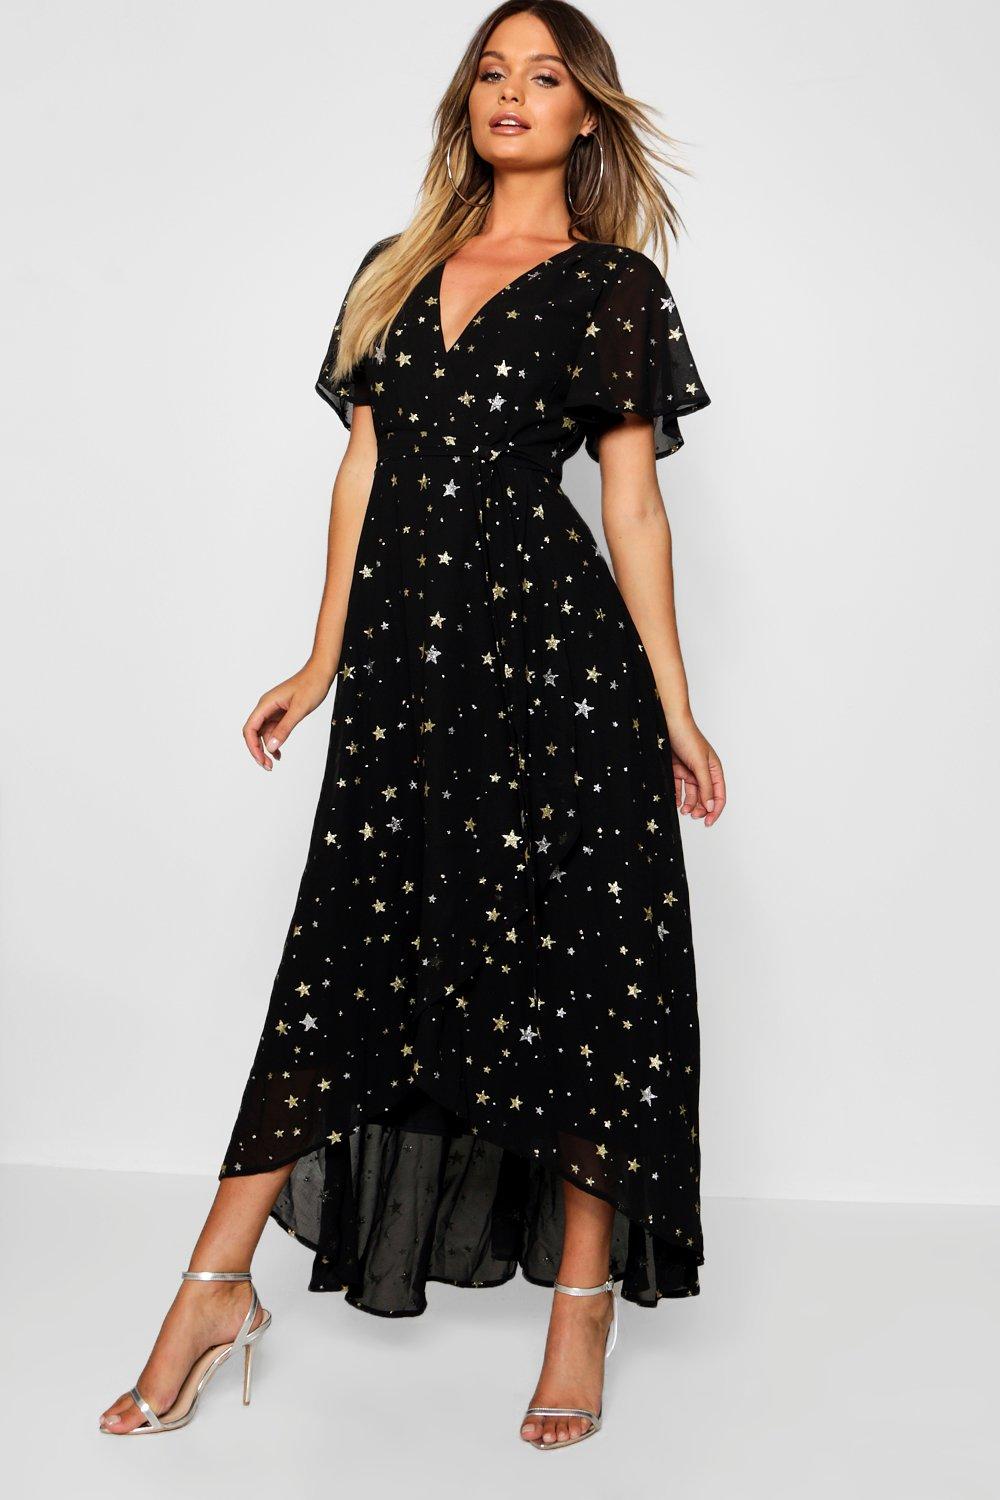 star black dress